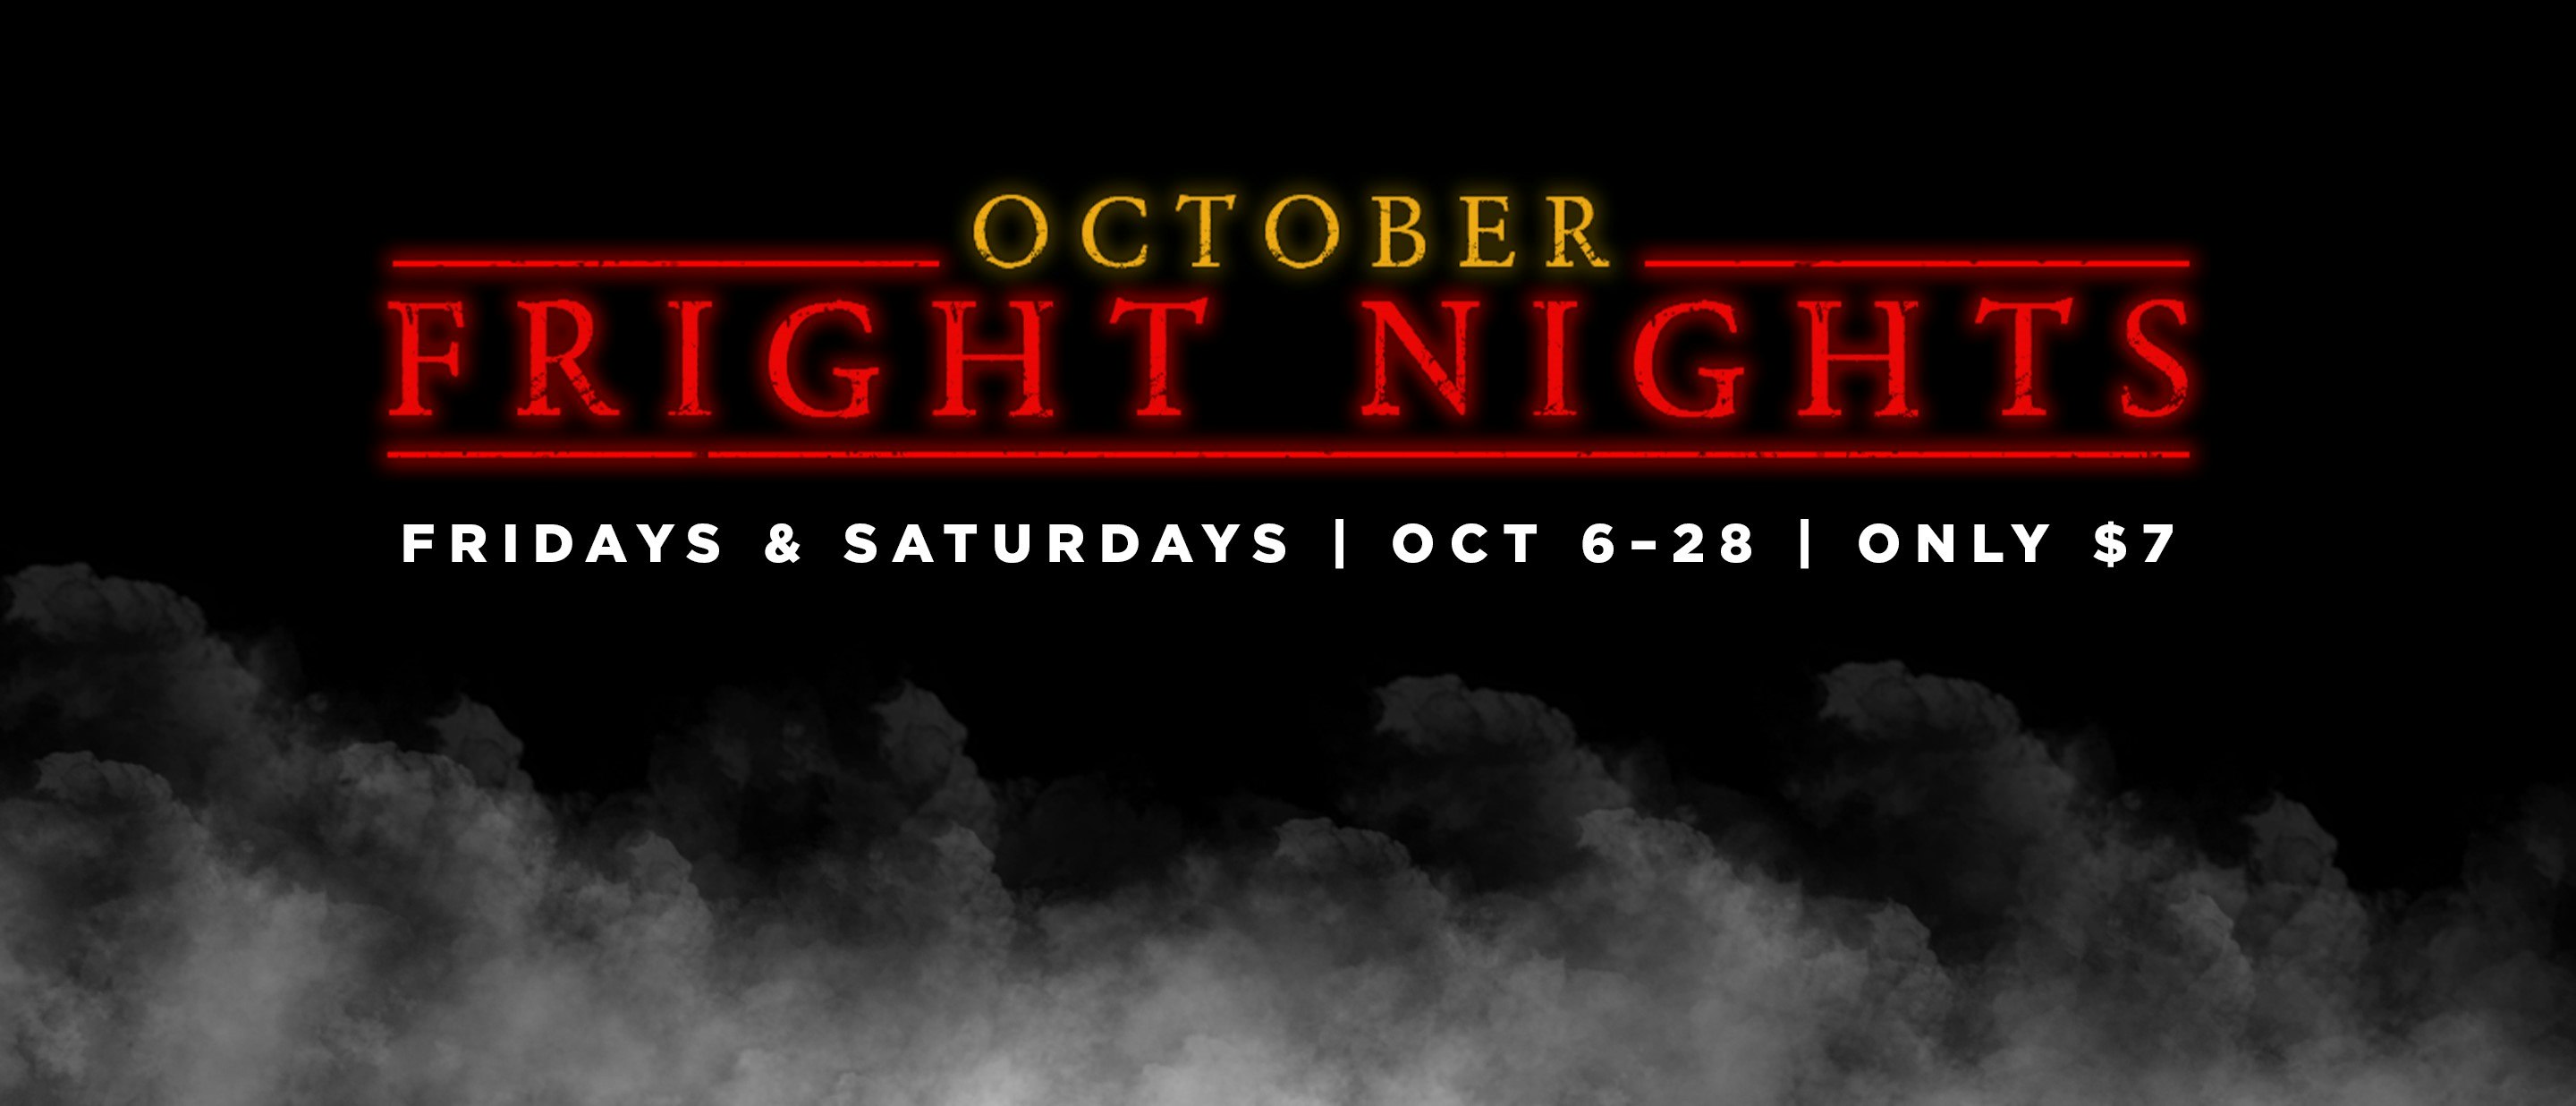 October Fright Nights